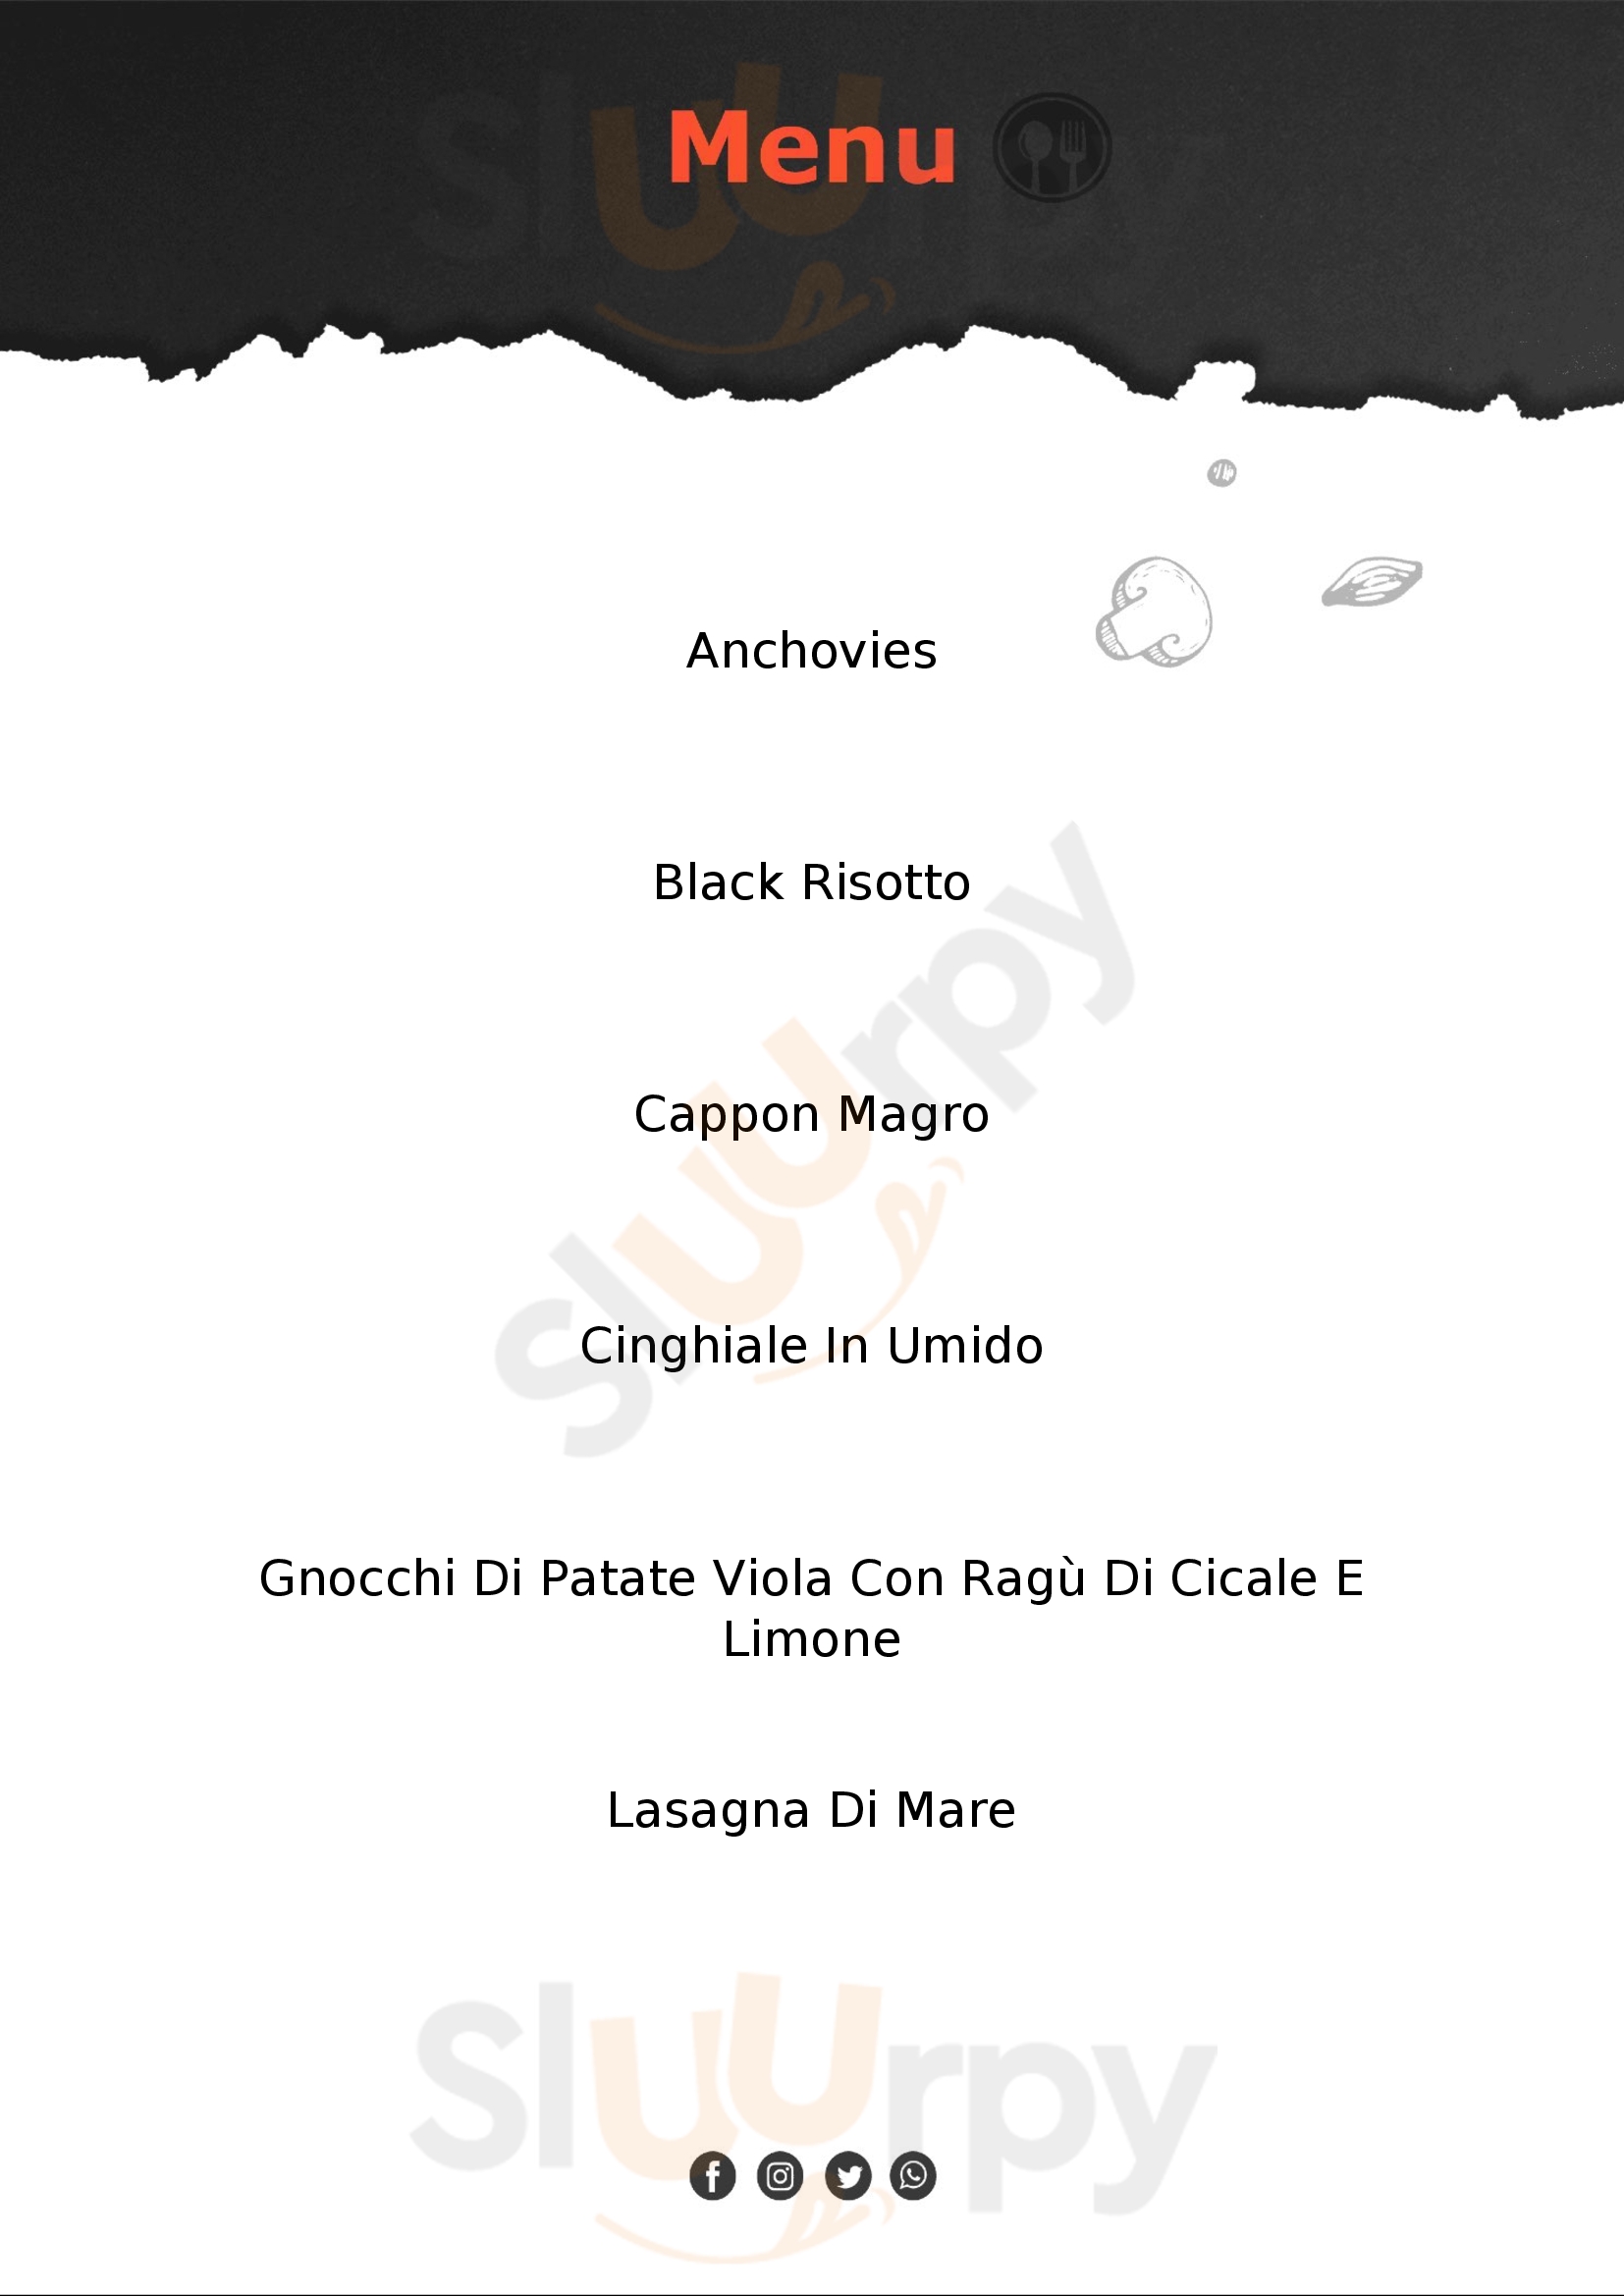 La Carabaccia Osteria e Cucina La Spezia menù 1 pagina